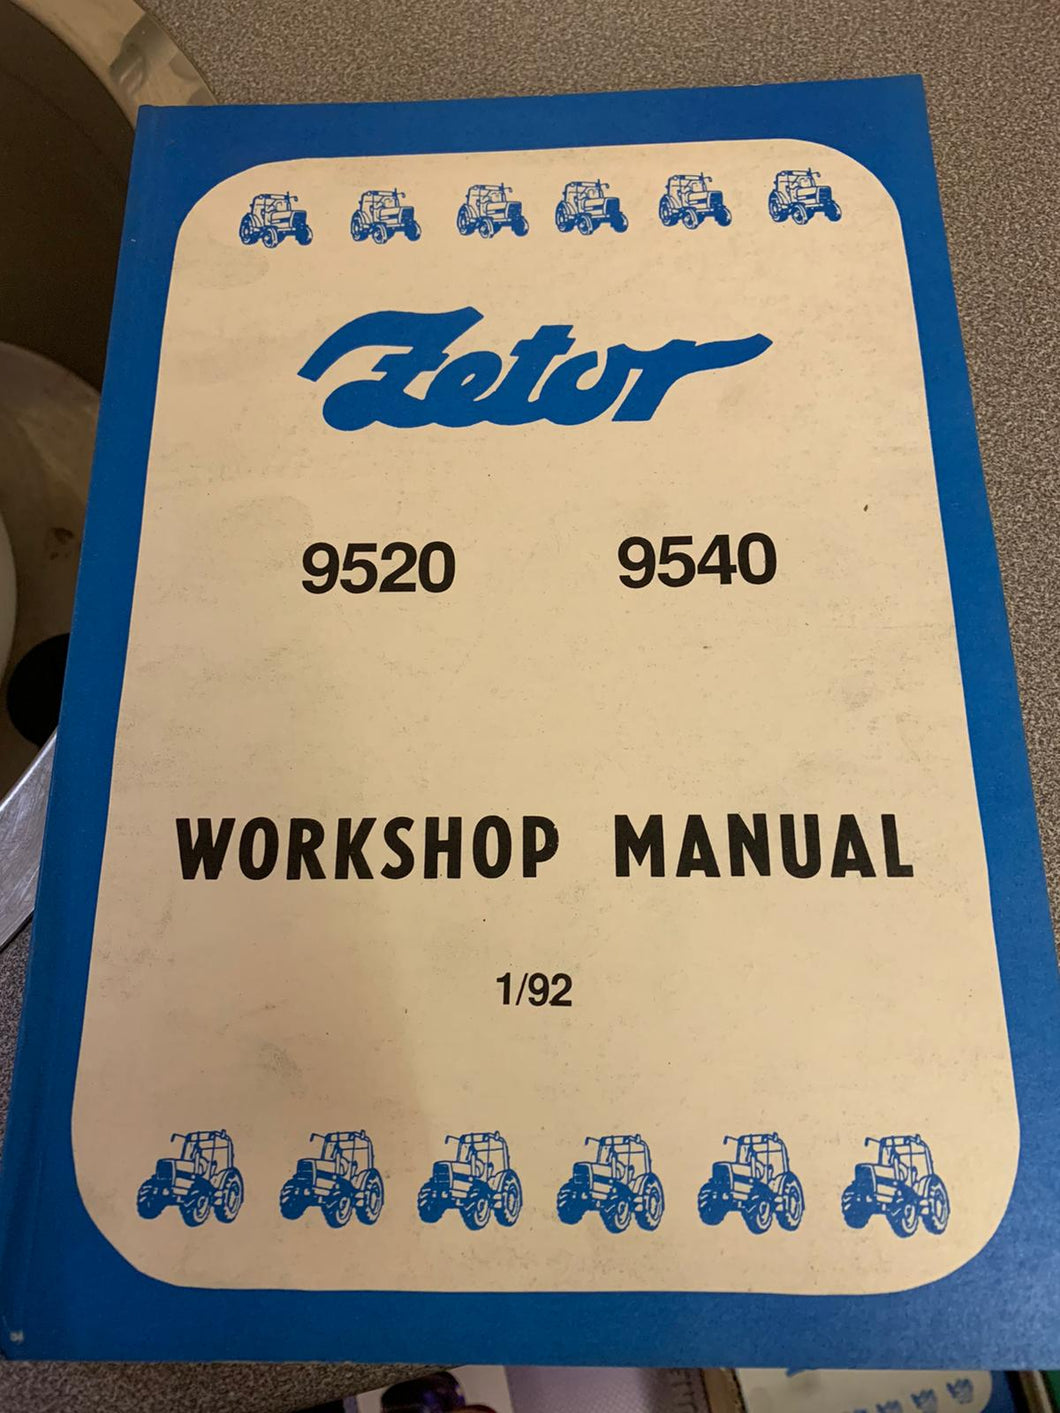 Workshop Manual for Zetor 9520 and 9540.